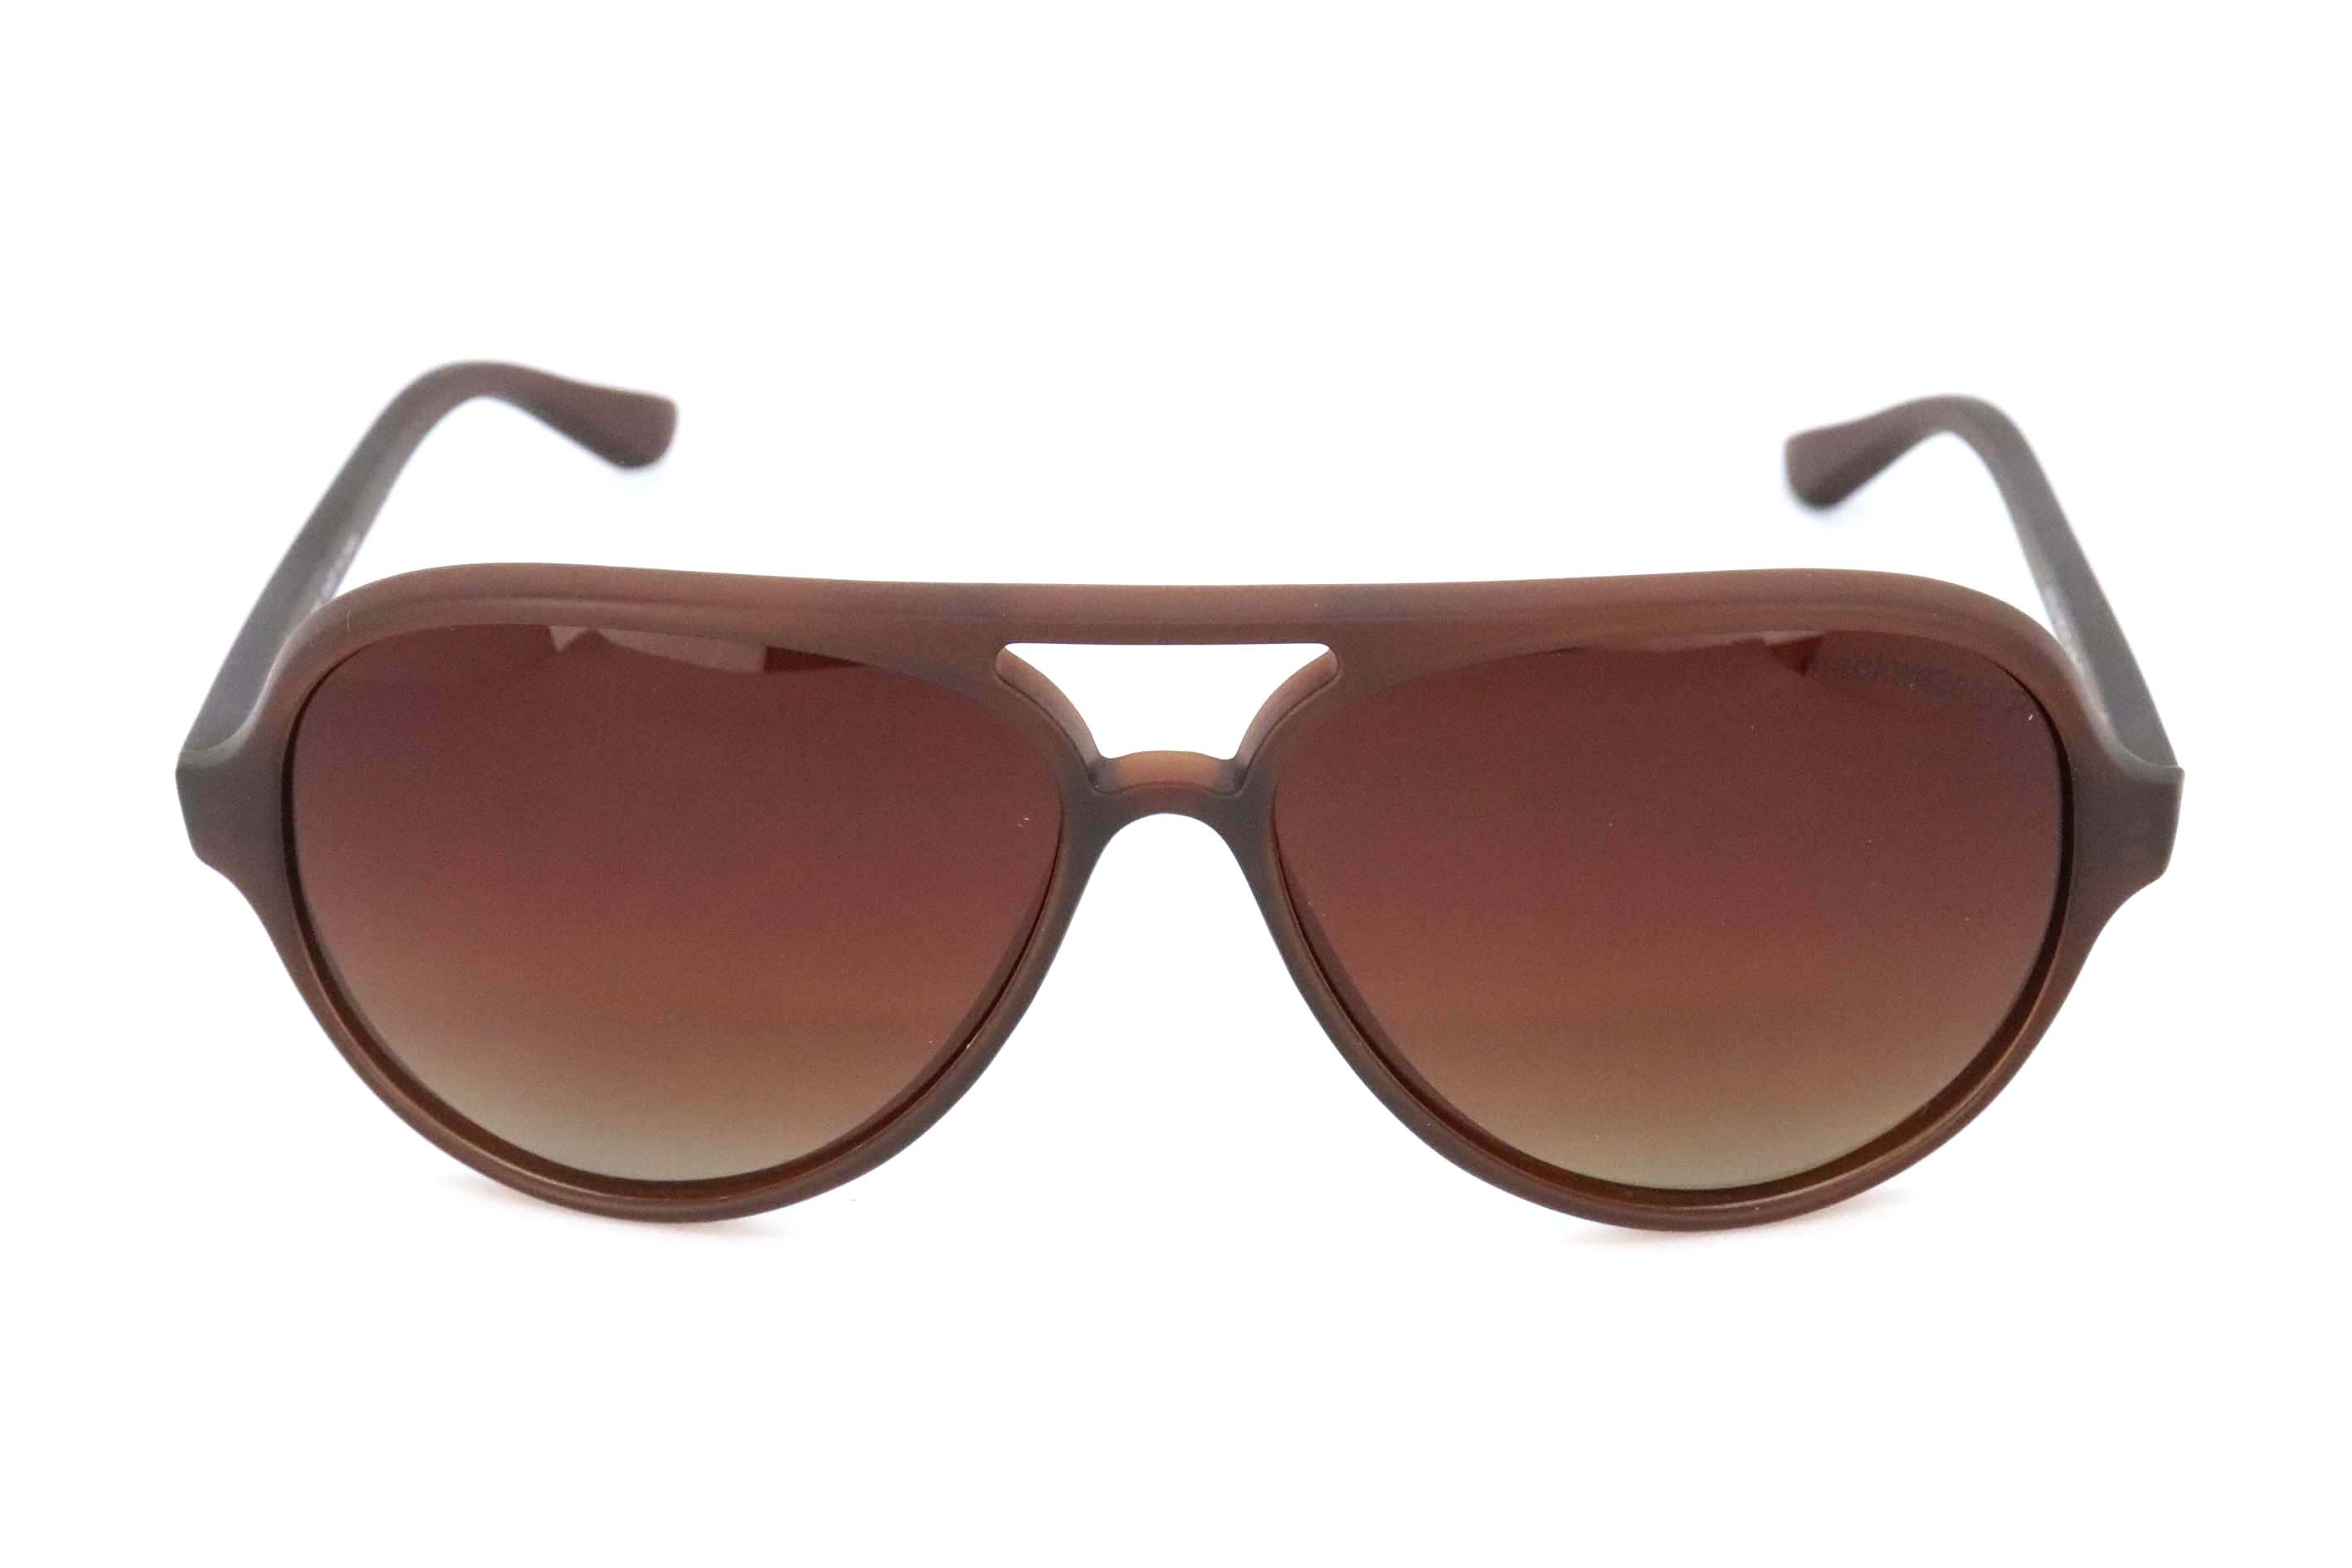 MackWezard Sunglasses -4125-c3-58-15-140